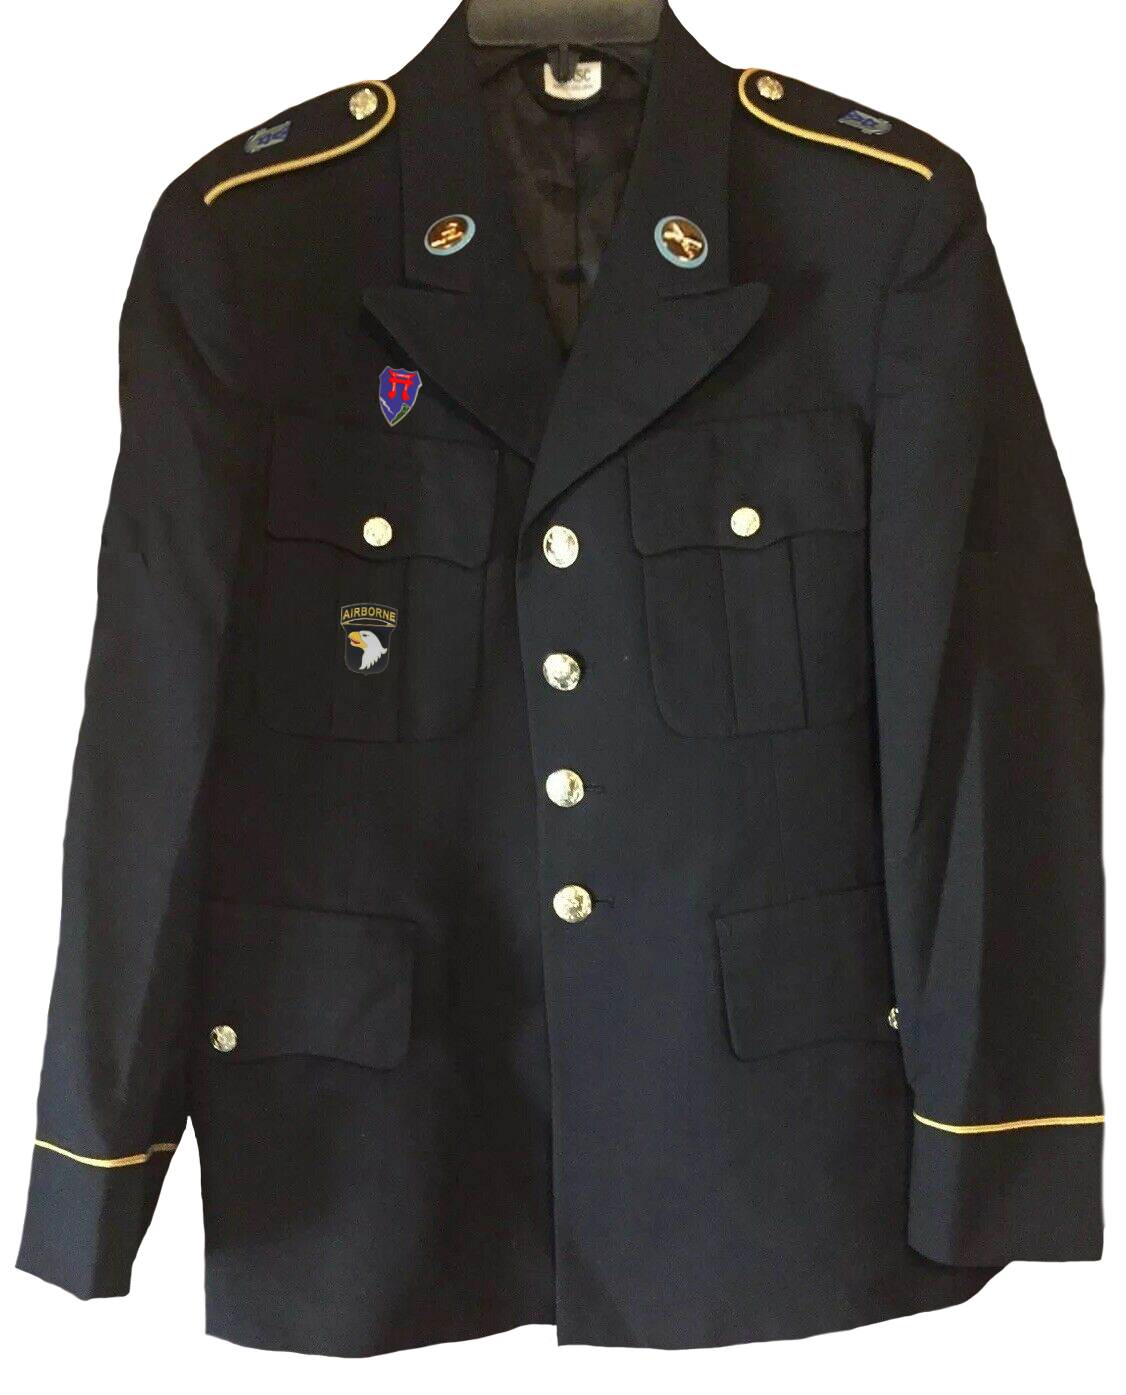 Die Uniform von Benzema1986